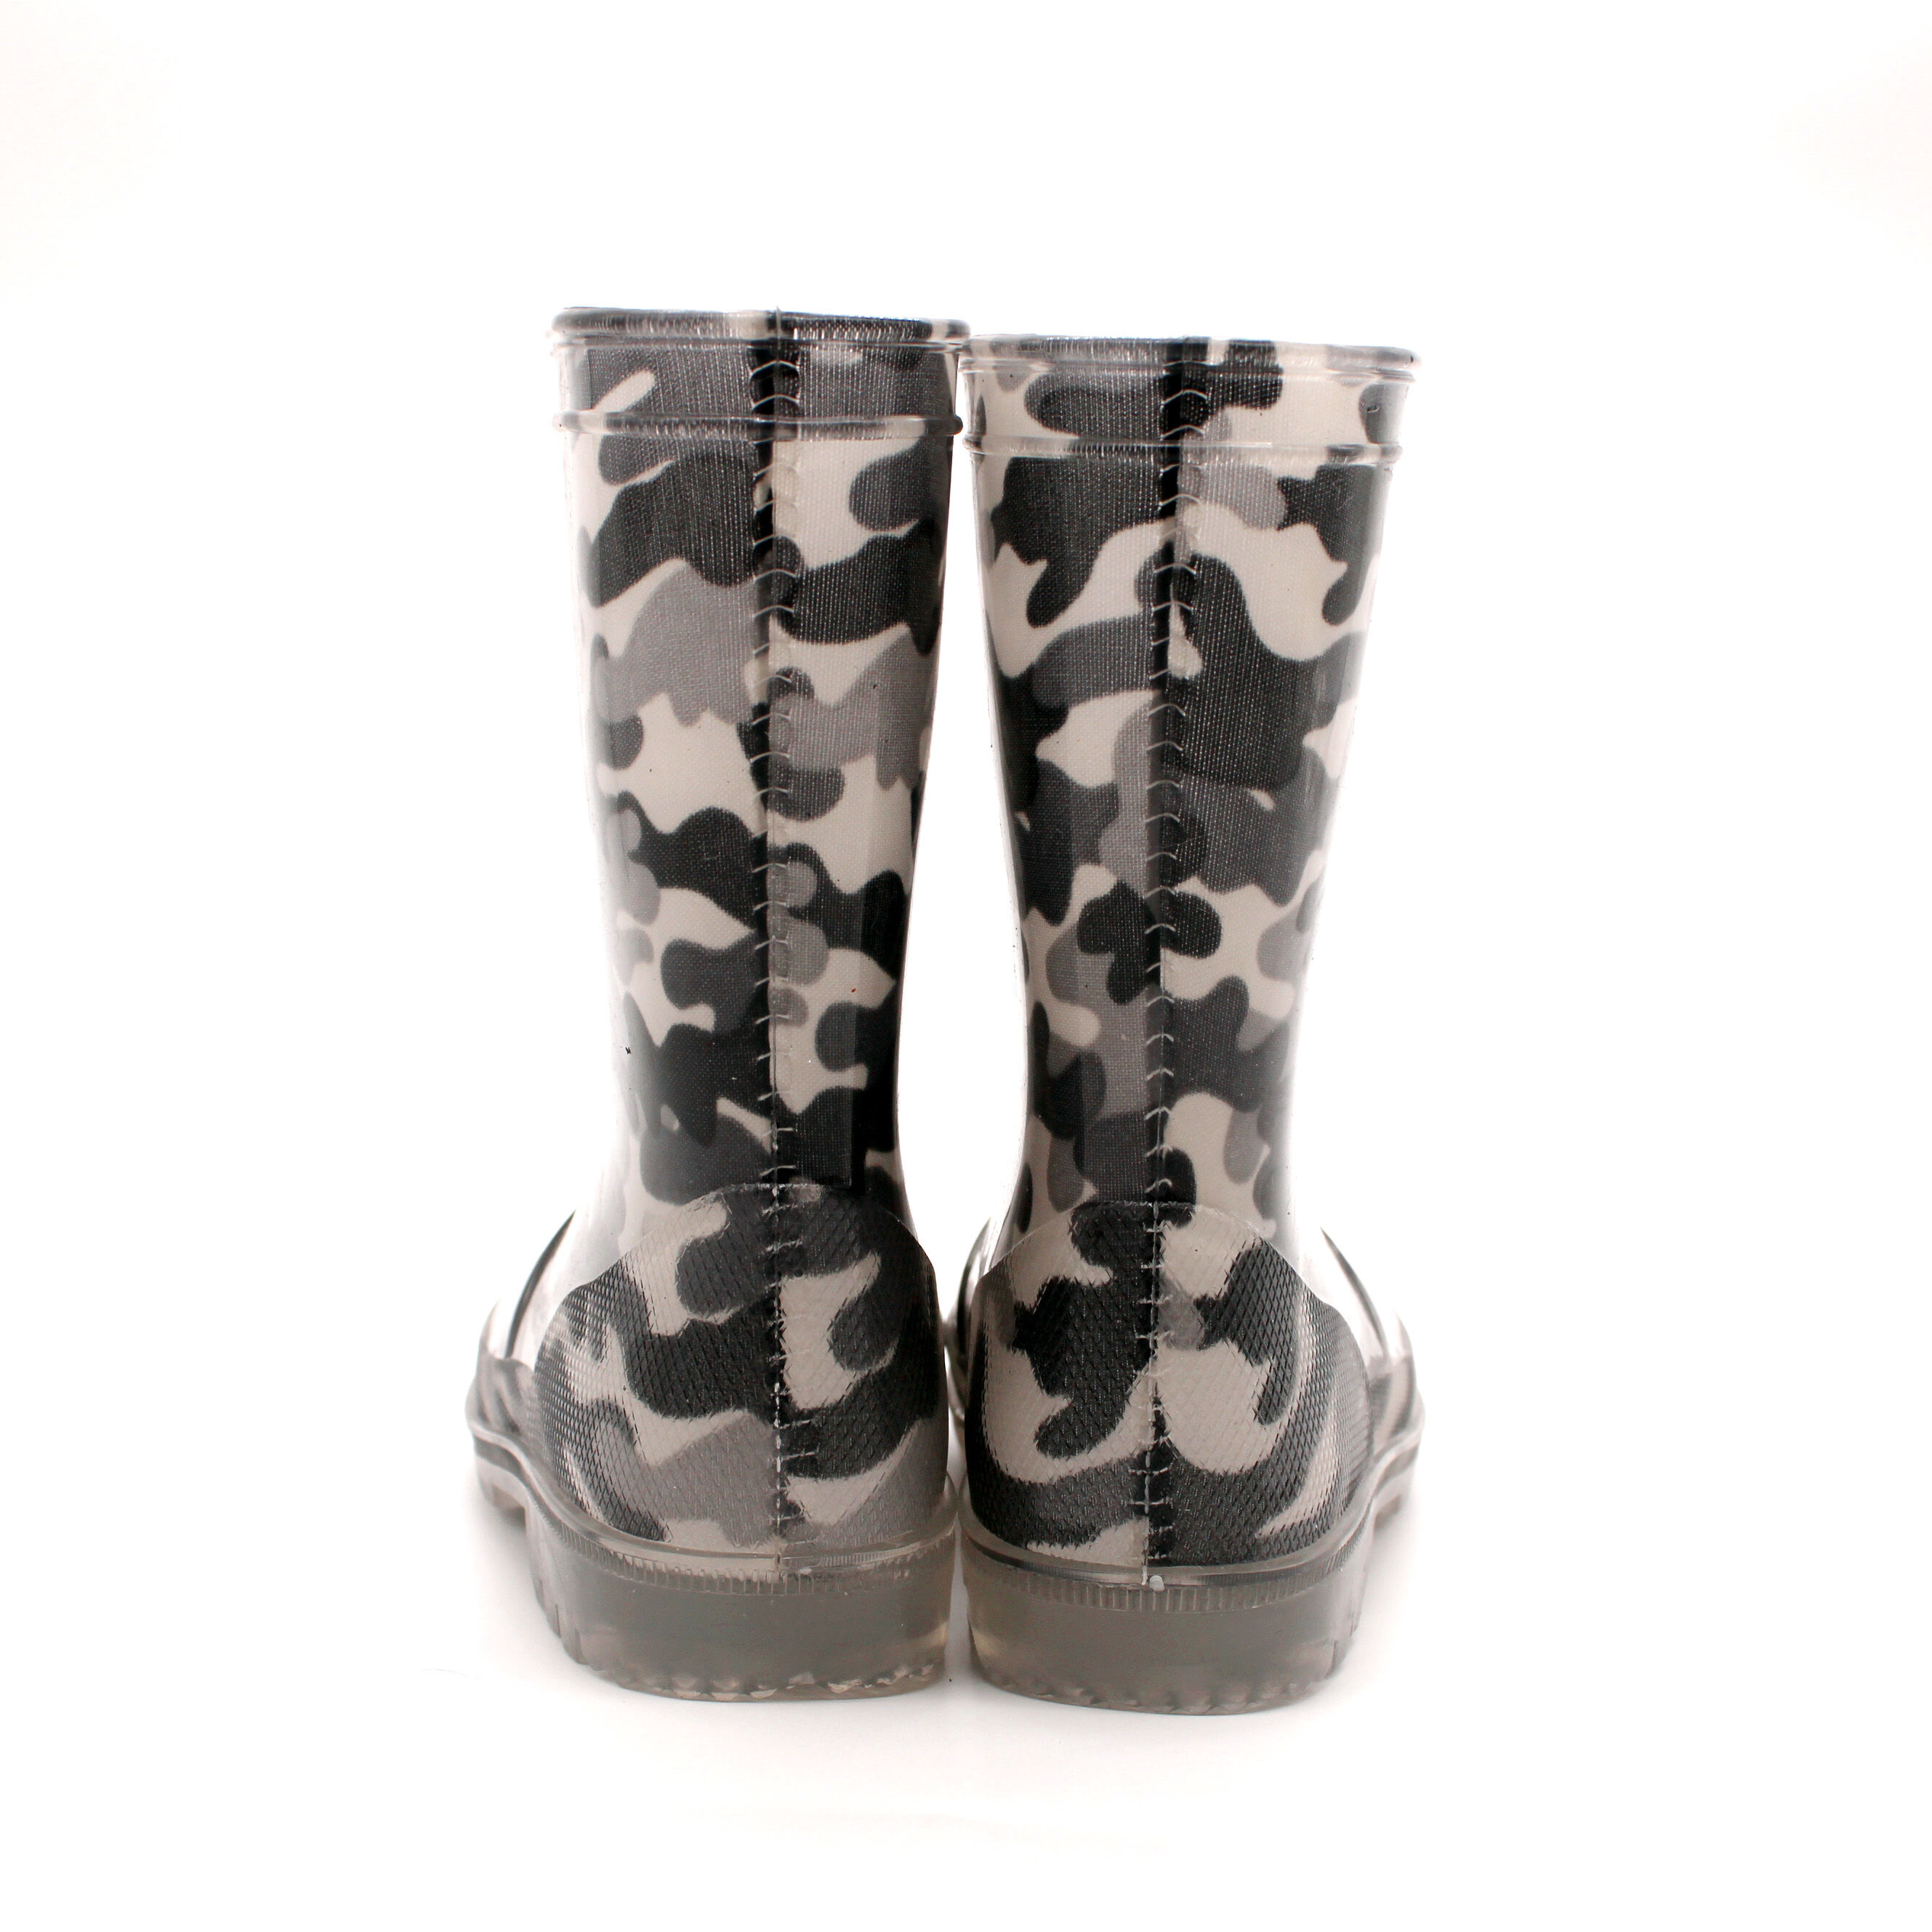 Buy Wholesale China Wholesale Pvc Children's Rain Boots Tpe Lamp Boots ...